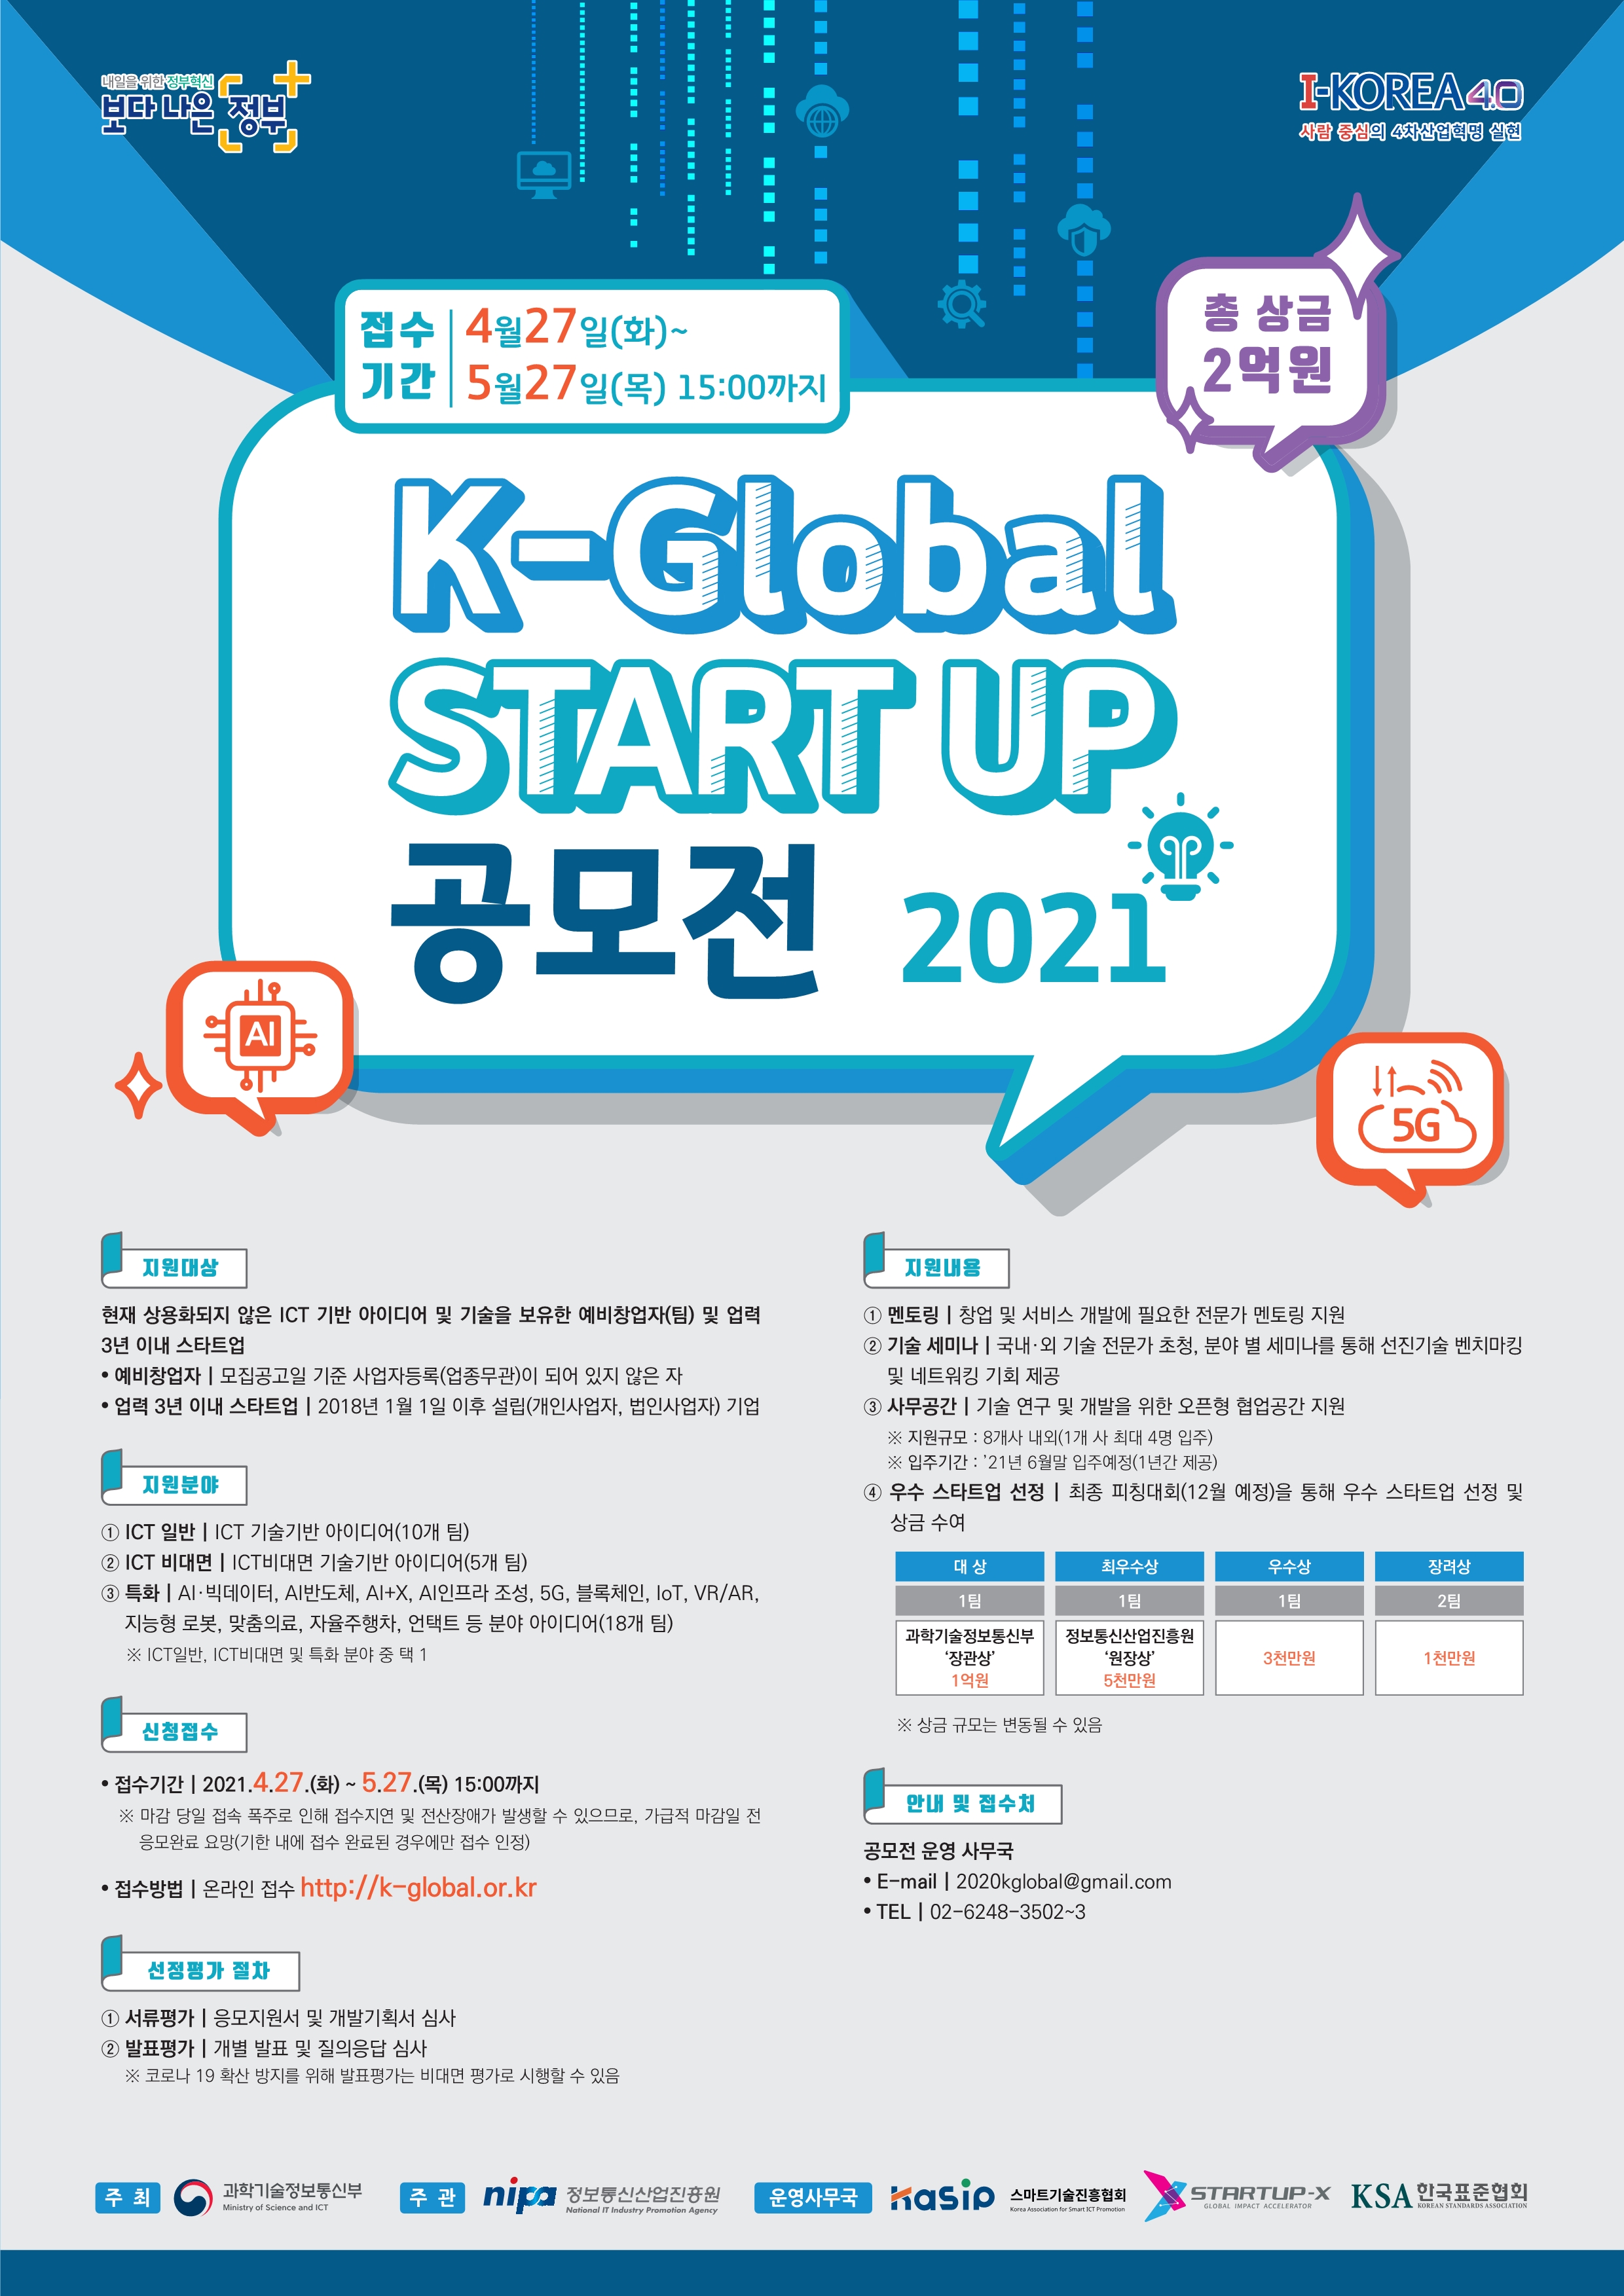 2021년 K-Global 스타트업 공모전